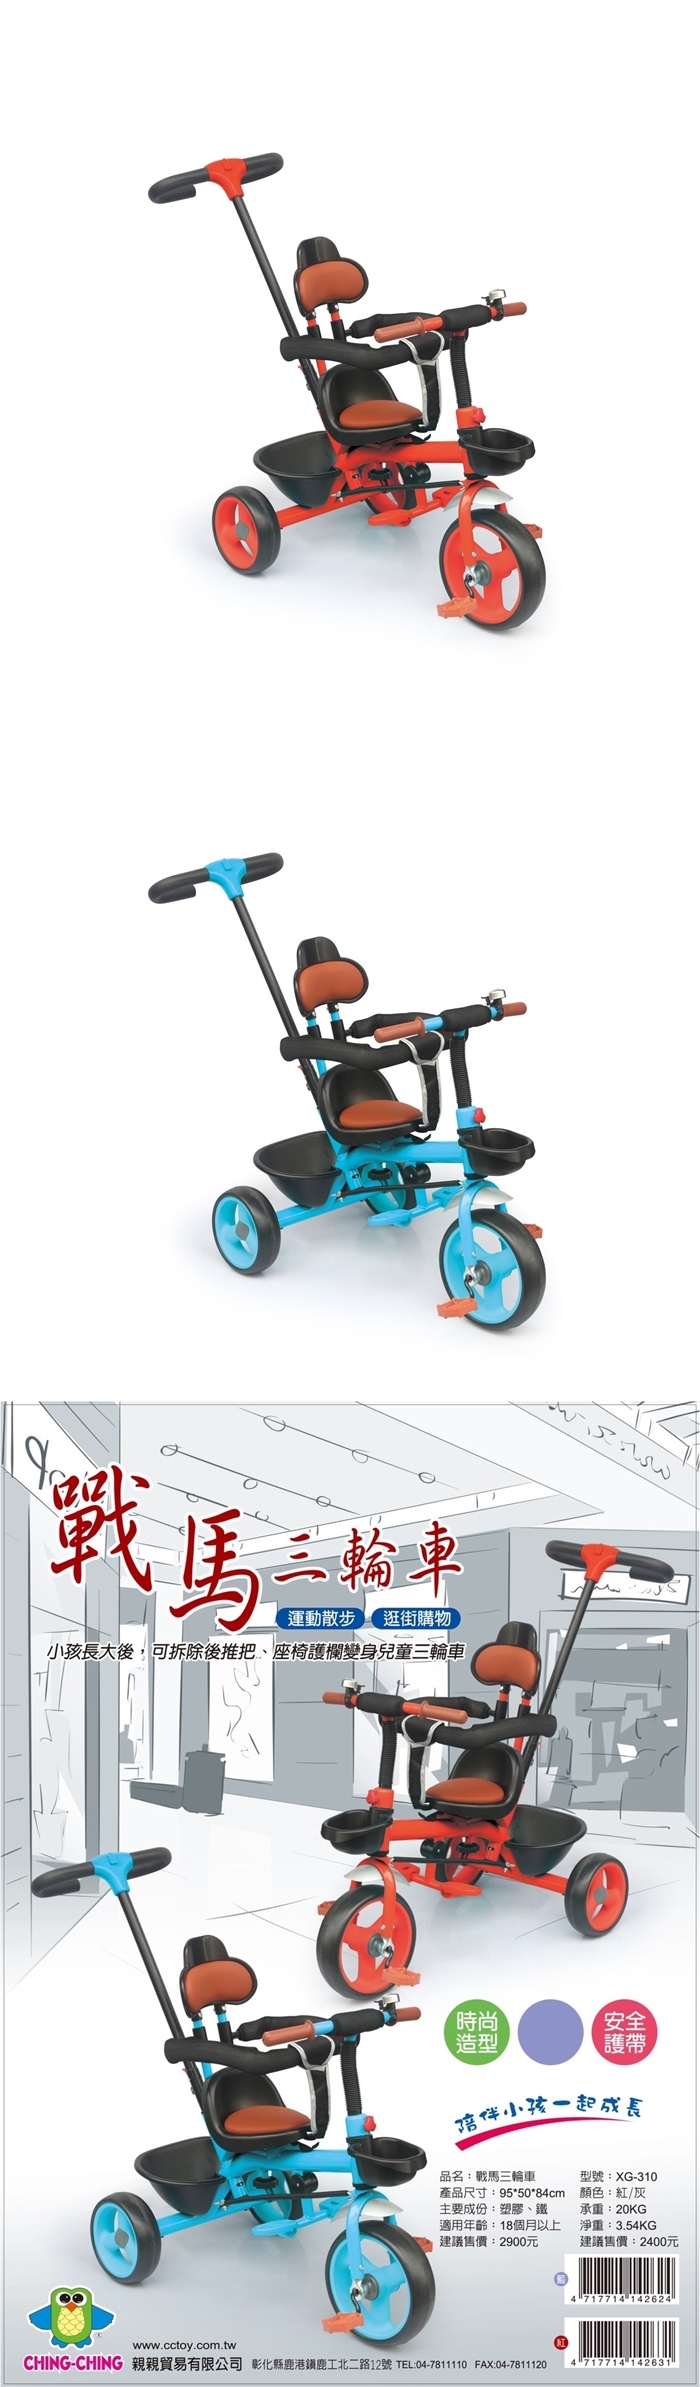 CHING-CHING親親-戰馬三輪車-(紅色/藍色)XG-310